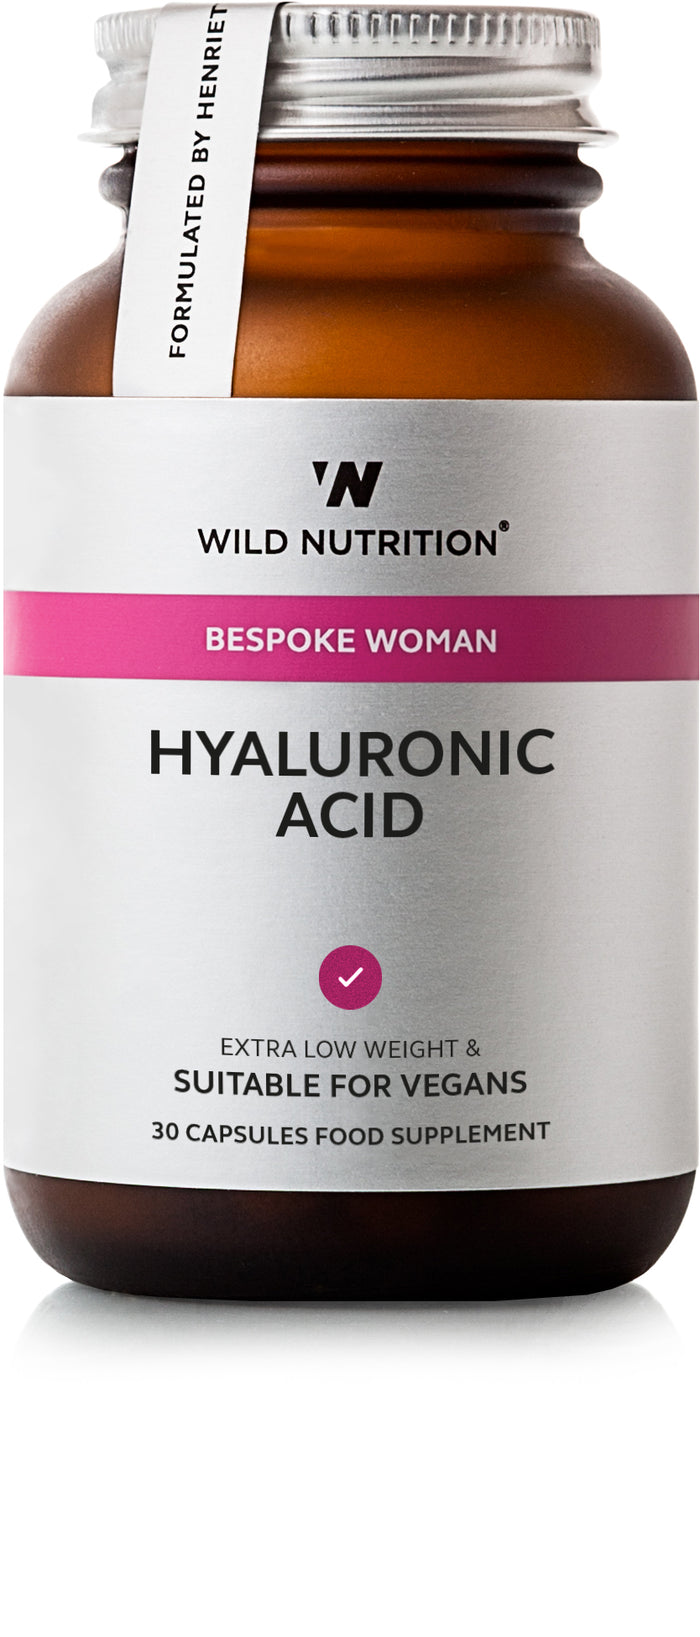 Wild Nutrition Bespoke Woman Hyaluronic Acid 30's